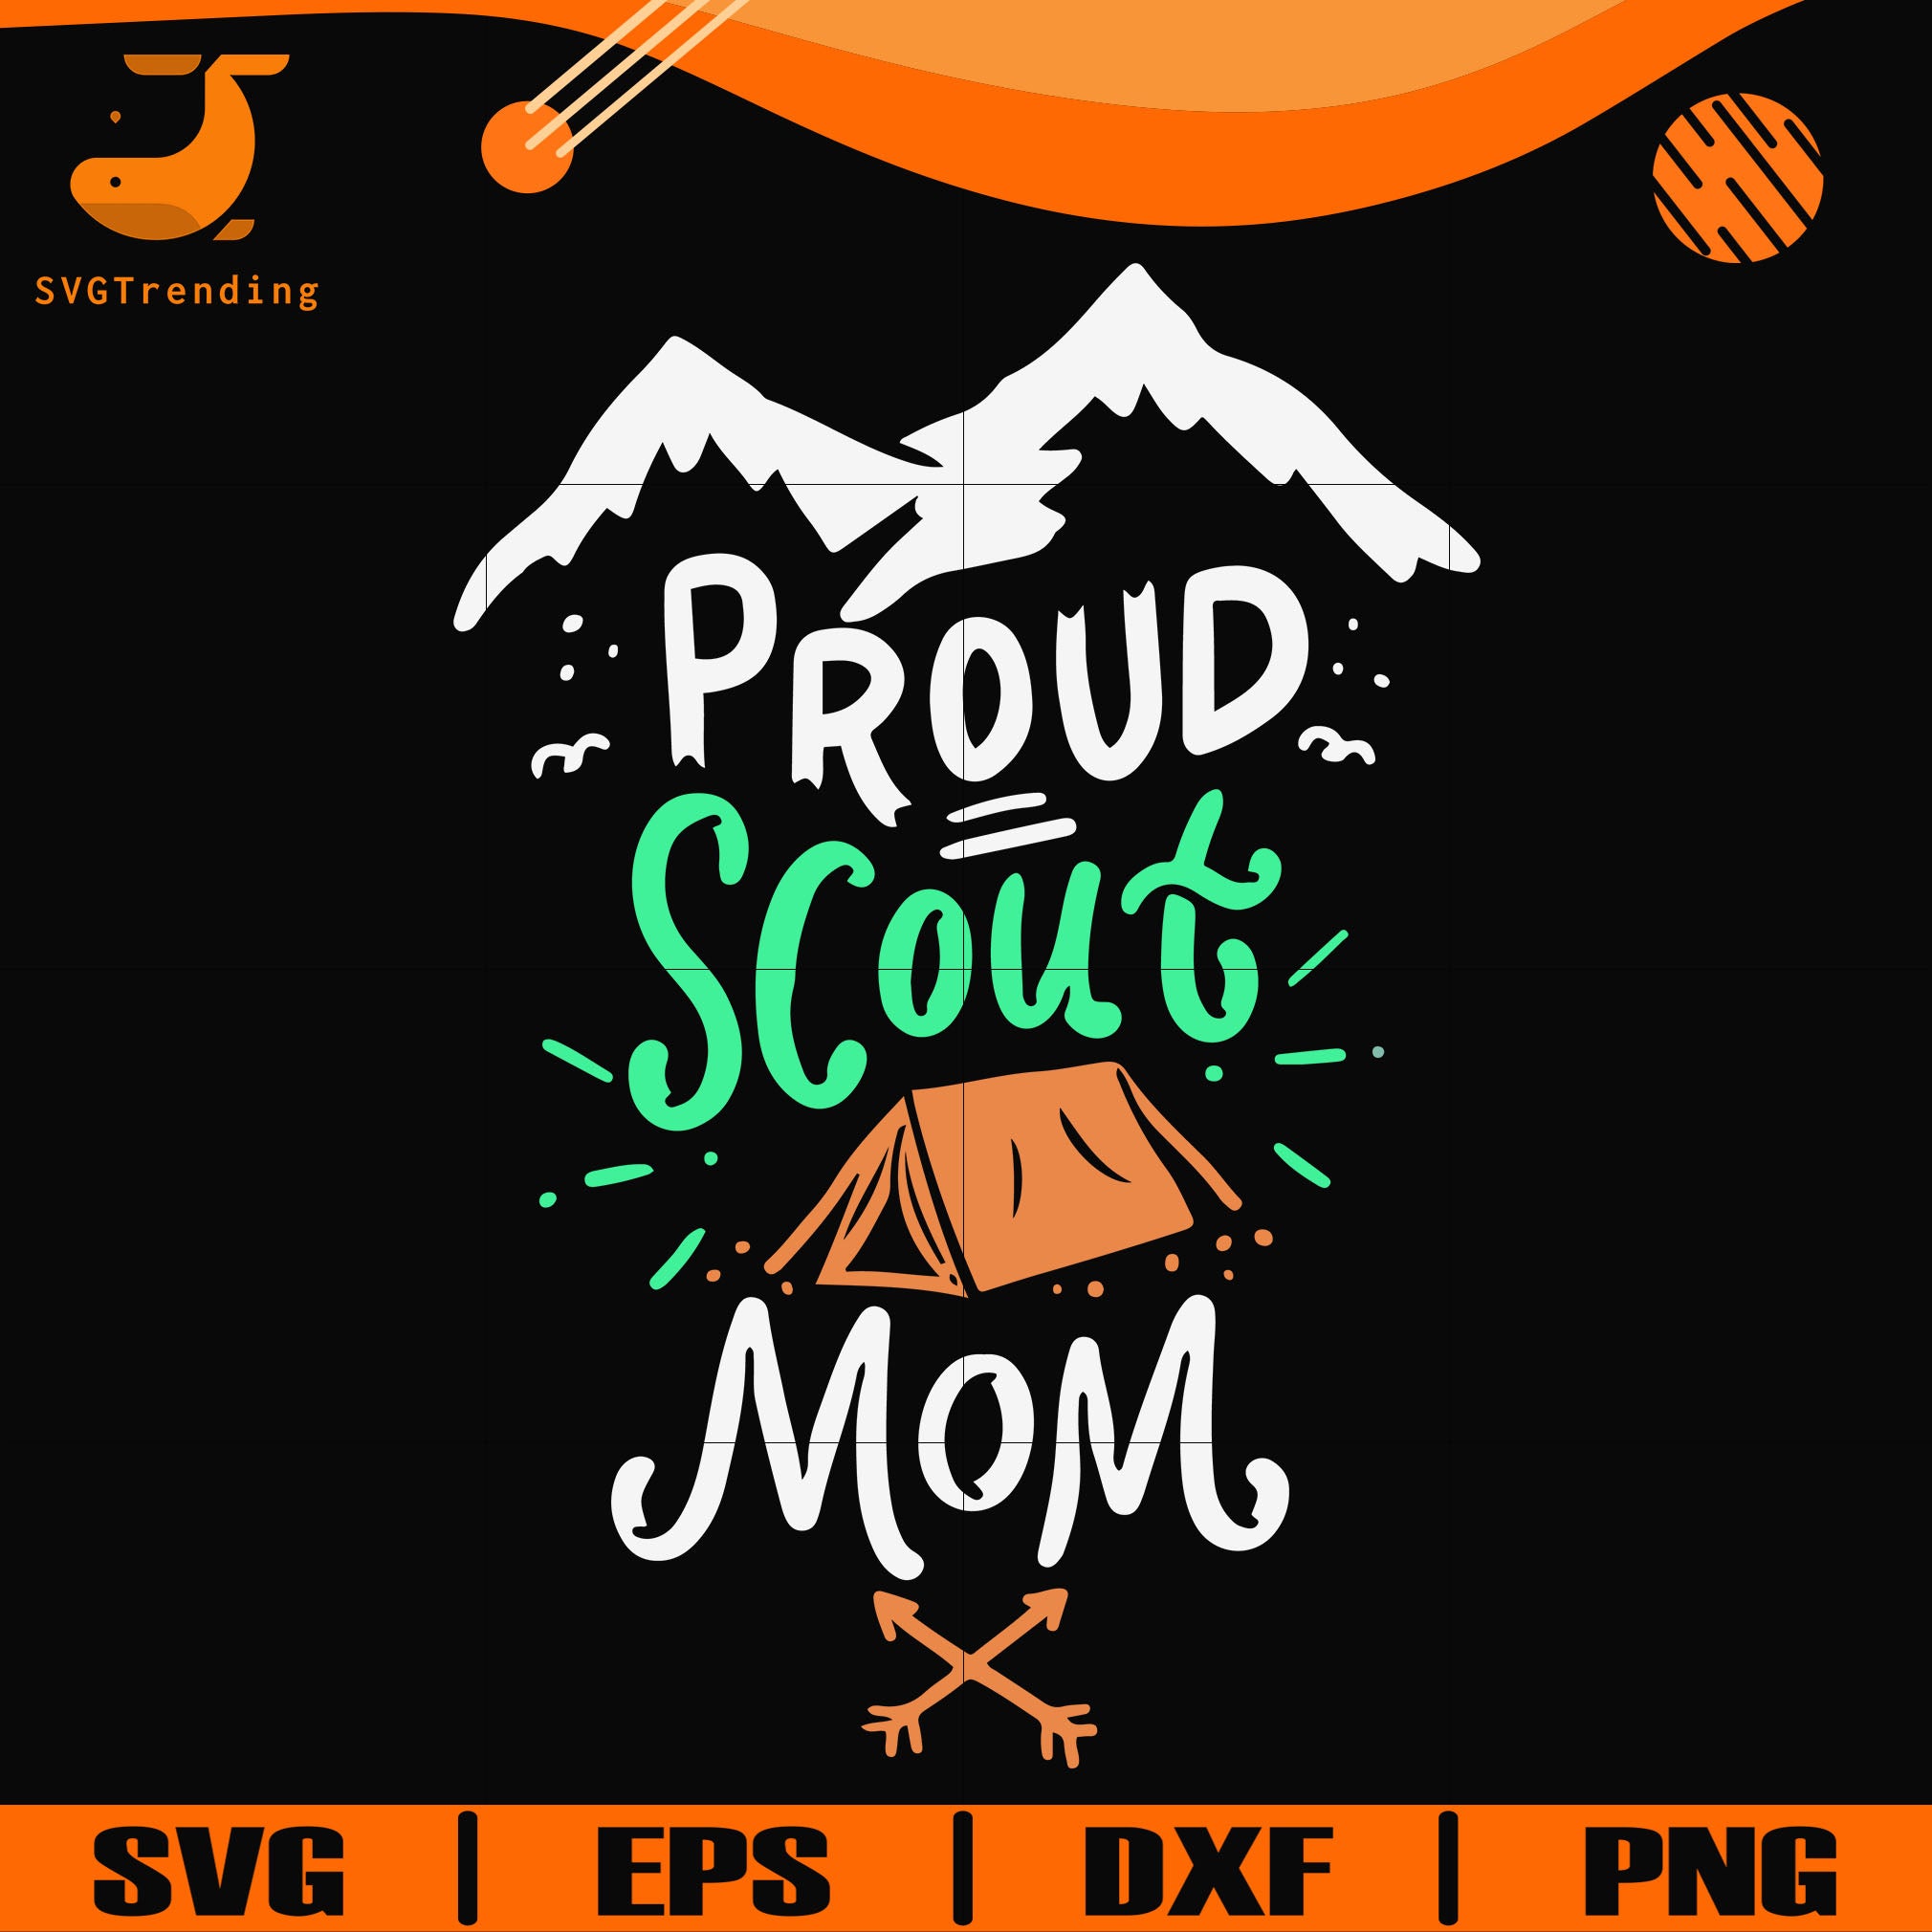 Download Proud Scout Mom Svg Png Dxf Eps Digital File Cmp0121 Svgtrending